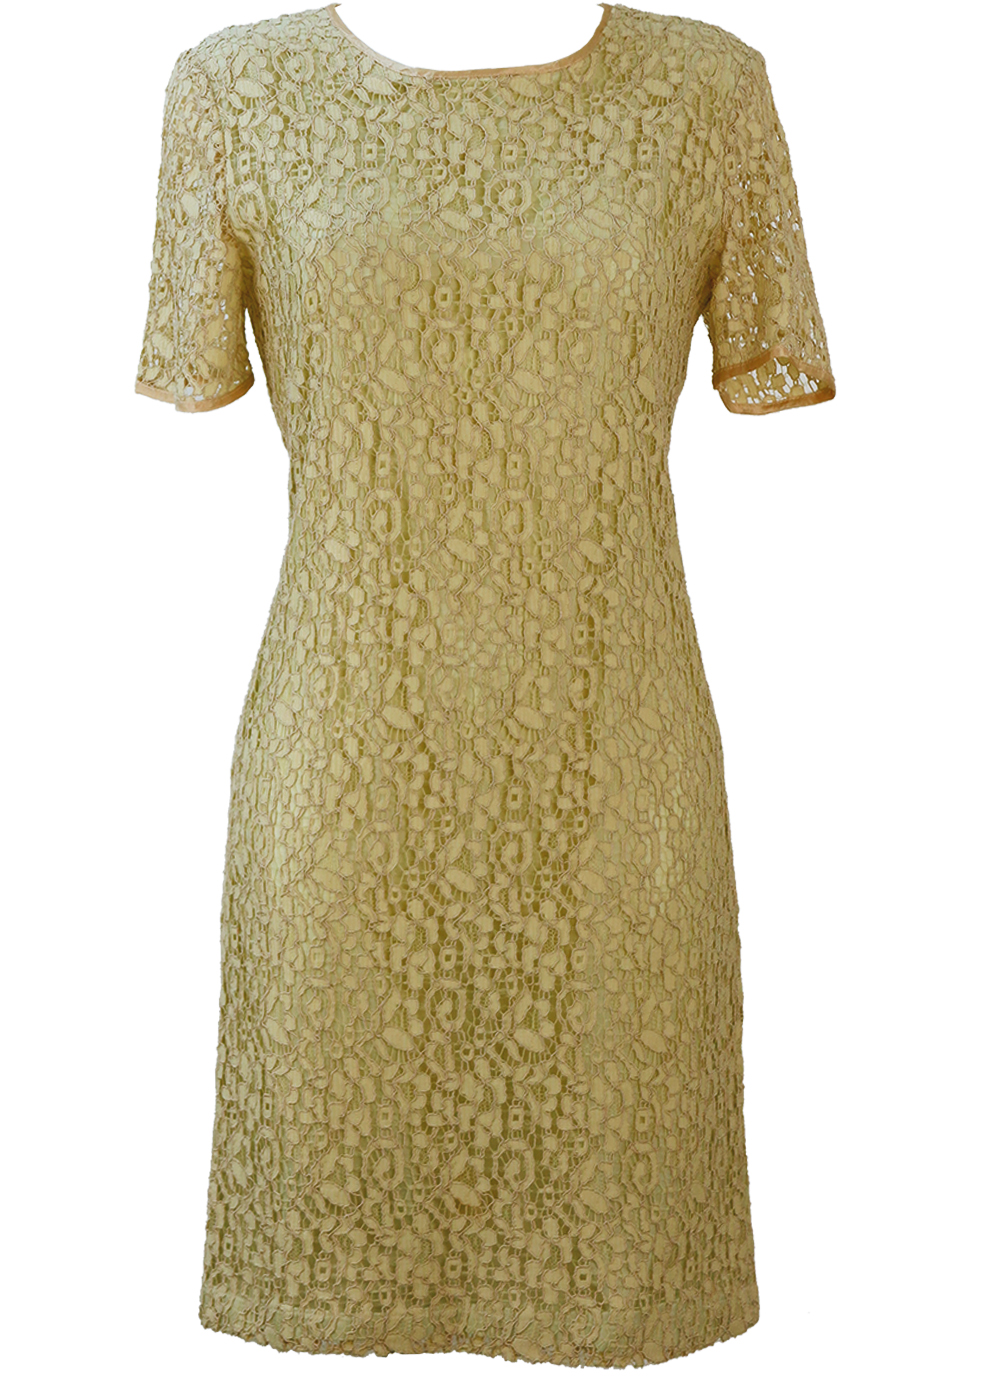 60s style shift dress